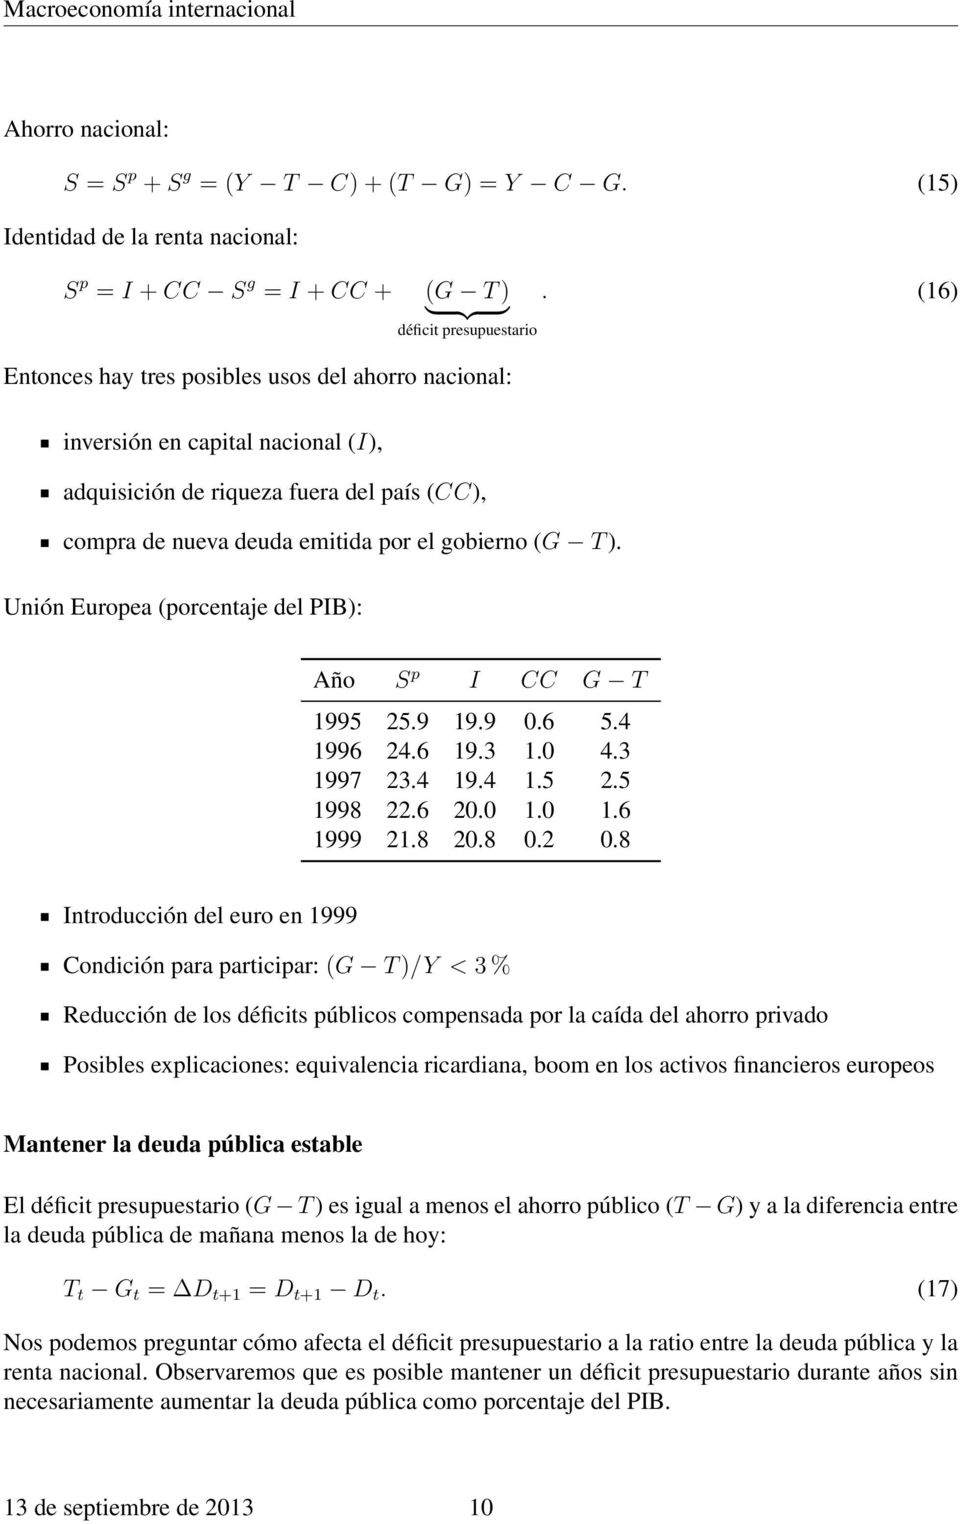 gobierno (G T ). Unión Europea (porcentaje del PIB): Año S p I CC G T 1995 25.9 19.9 0.6 5.4 1996 24.6 19.3 1.0 4.3 1997 23.4 19.4 1.5 2.5 1998 22.6 20.0 1.0 1.6 1999 21.8 20.8 0.2 0.